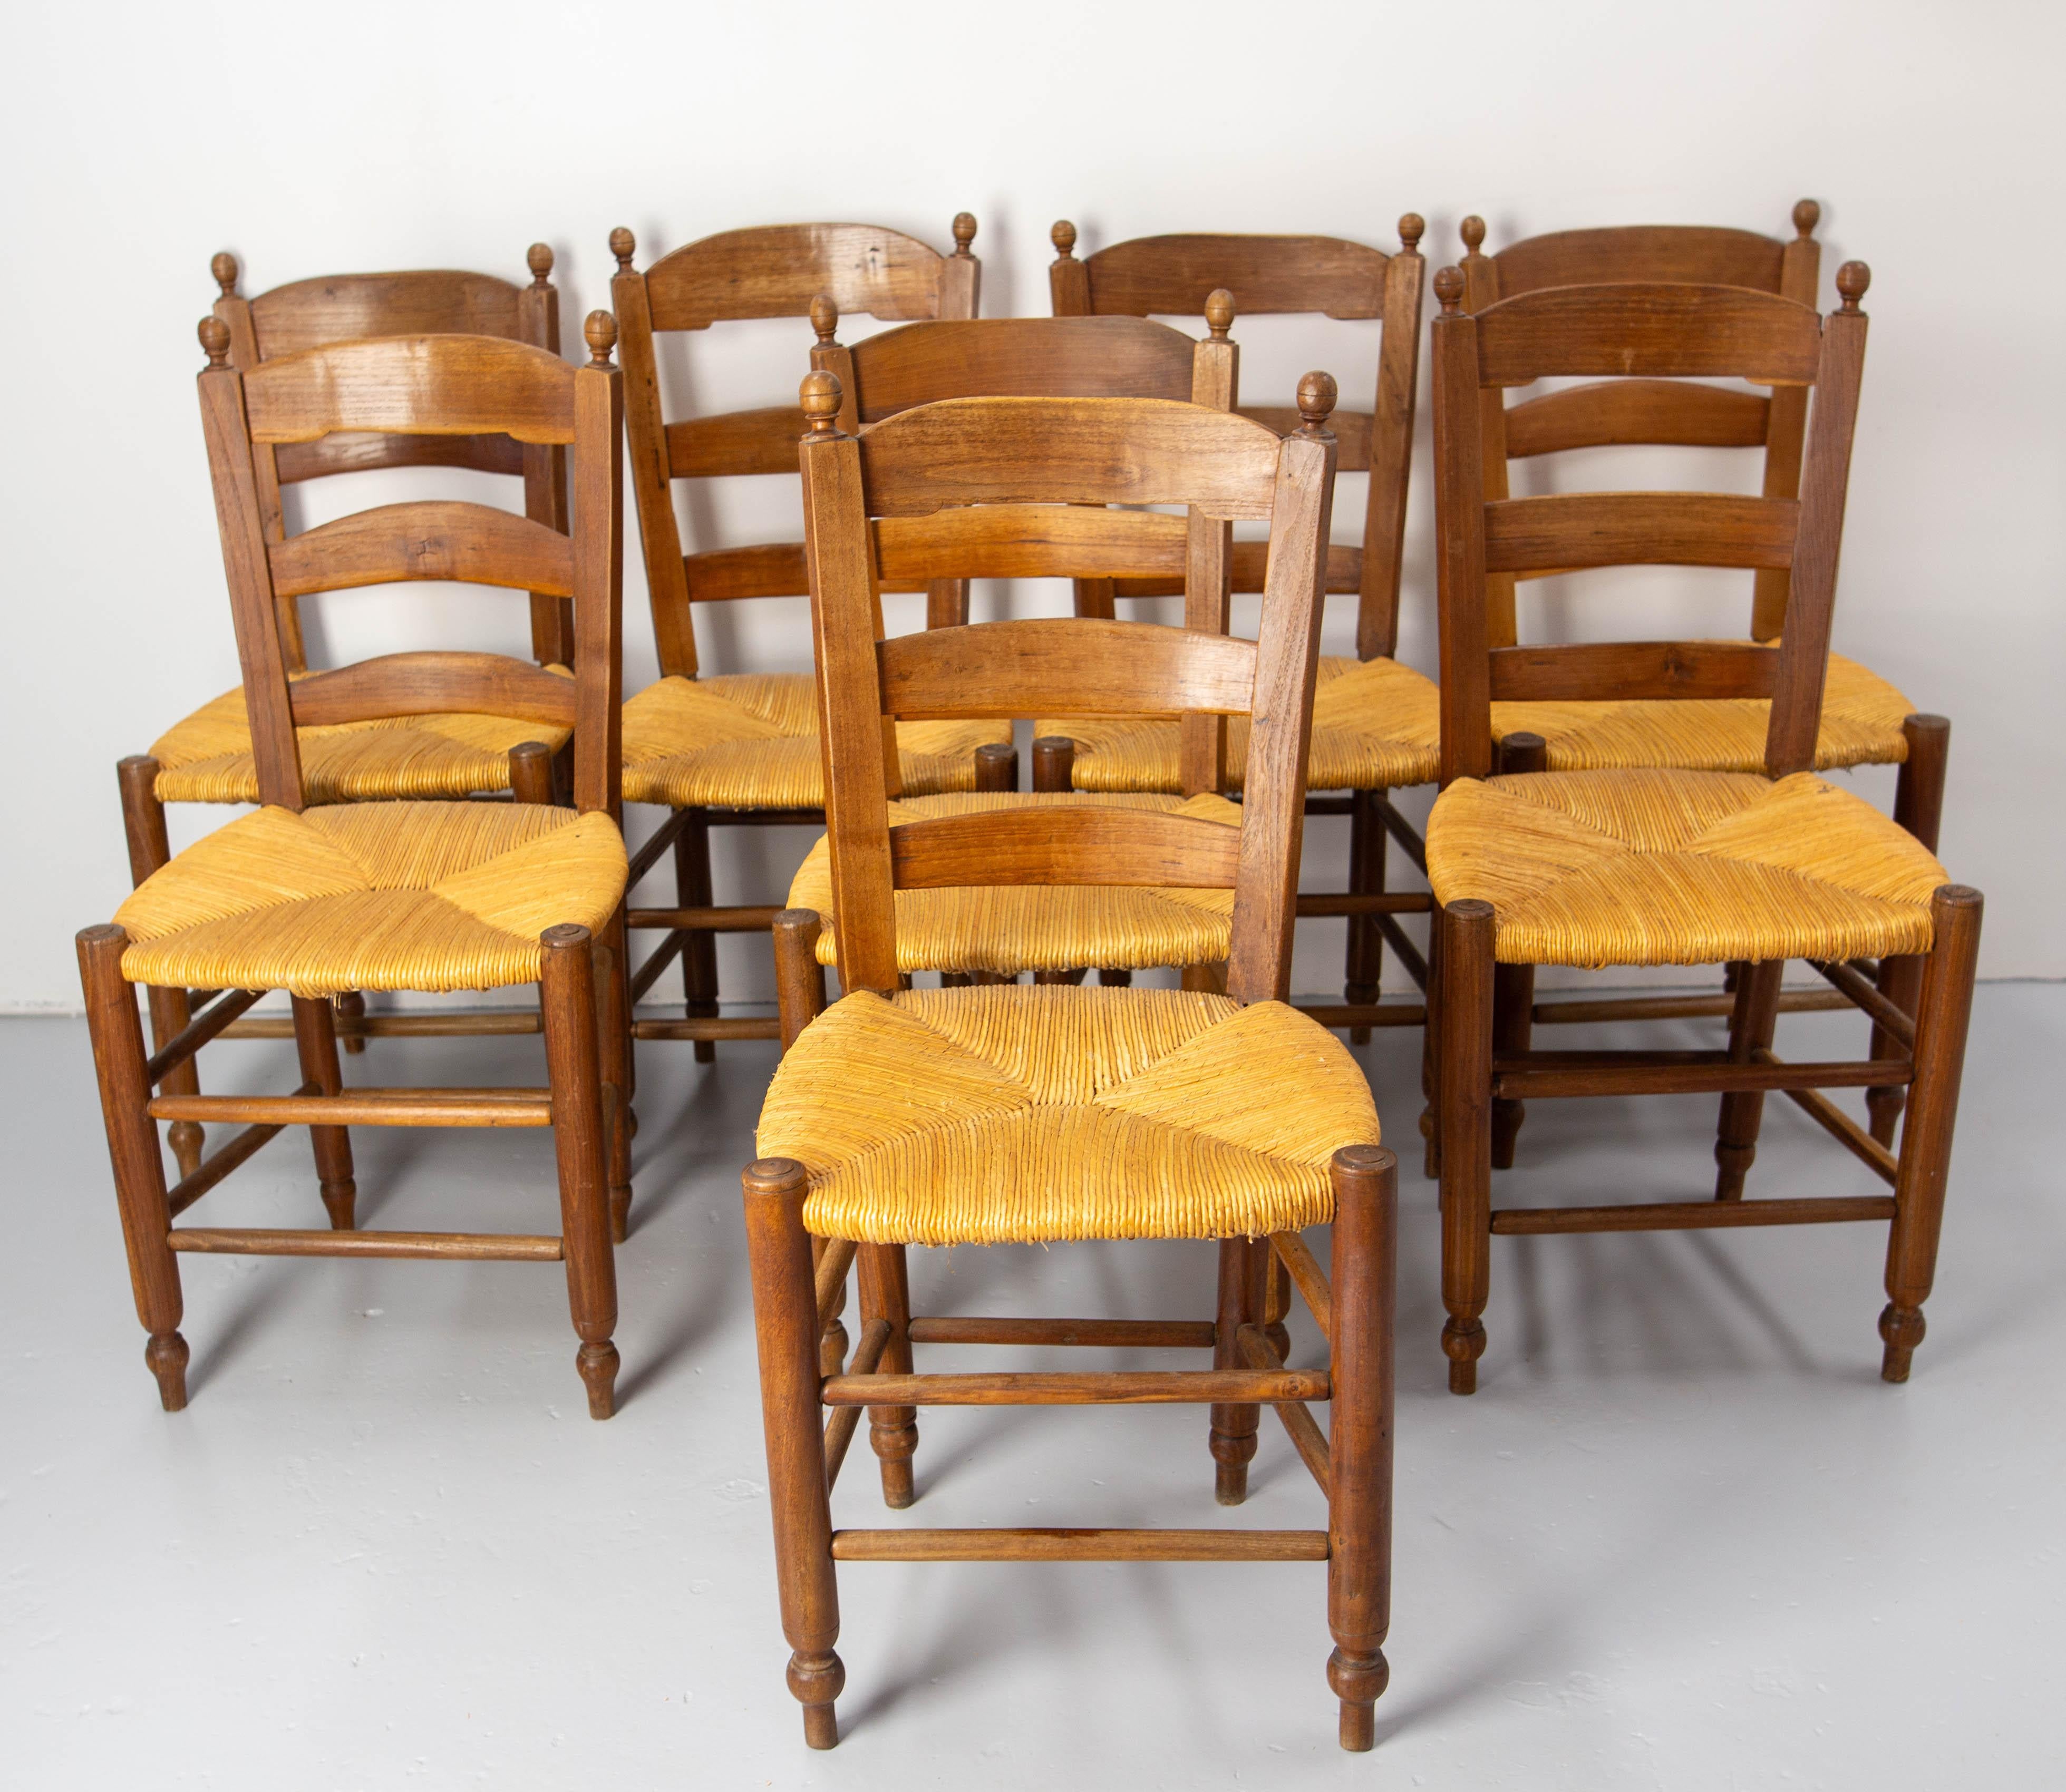 Ensemble de chaises françaises paillées et tournées, en orme vers 1880.
Ces chaises sont fabriquées à la main dans un atelier par différents ouvriers. C'est pourquoi les chaises ont parfois de petites différences de mesure d'un à deux centimètres,